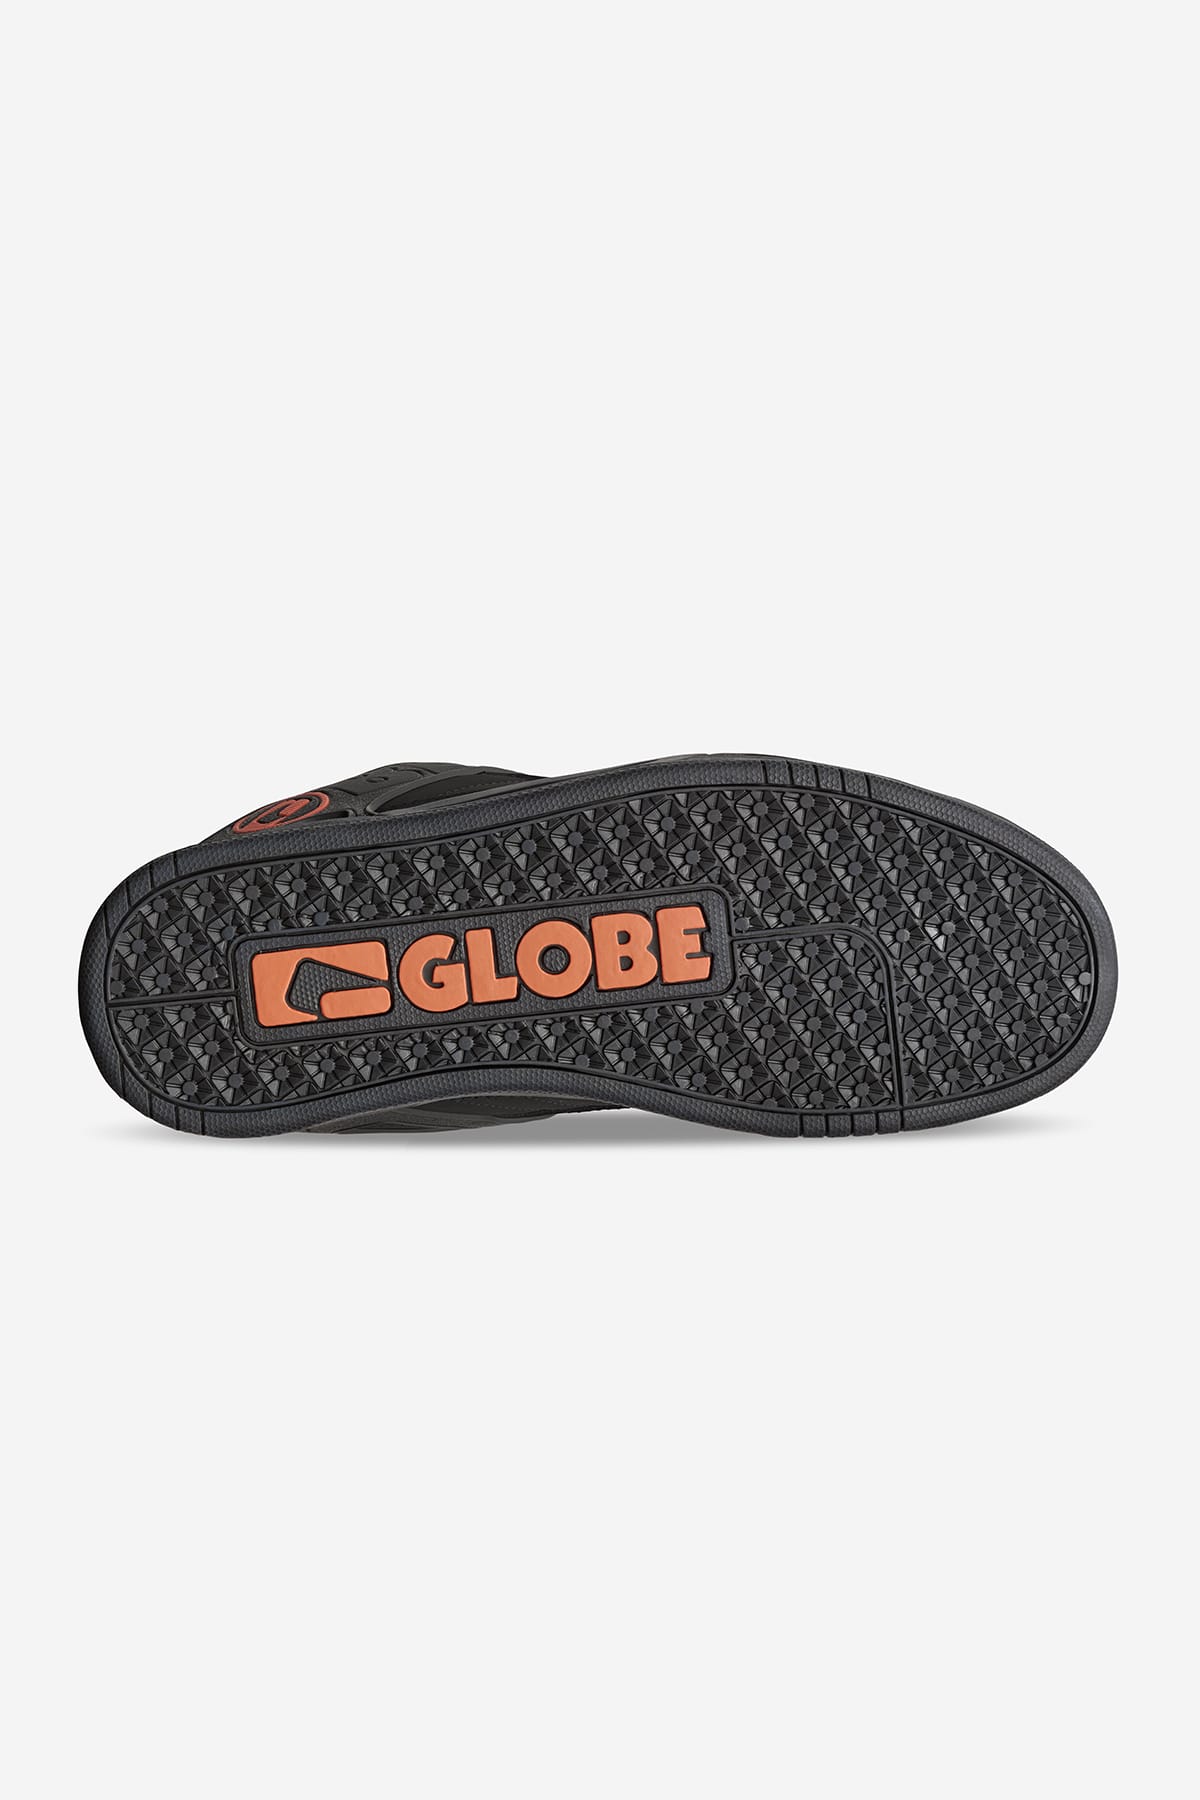 Globe - Tilt - Black/Black/Bronze - skateboard Schuhe